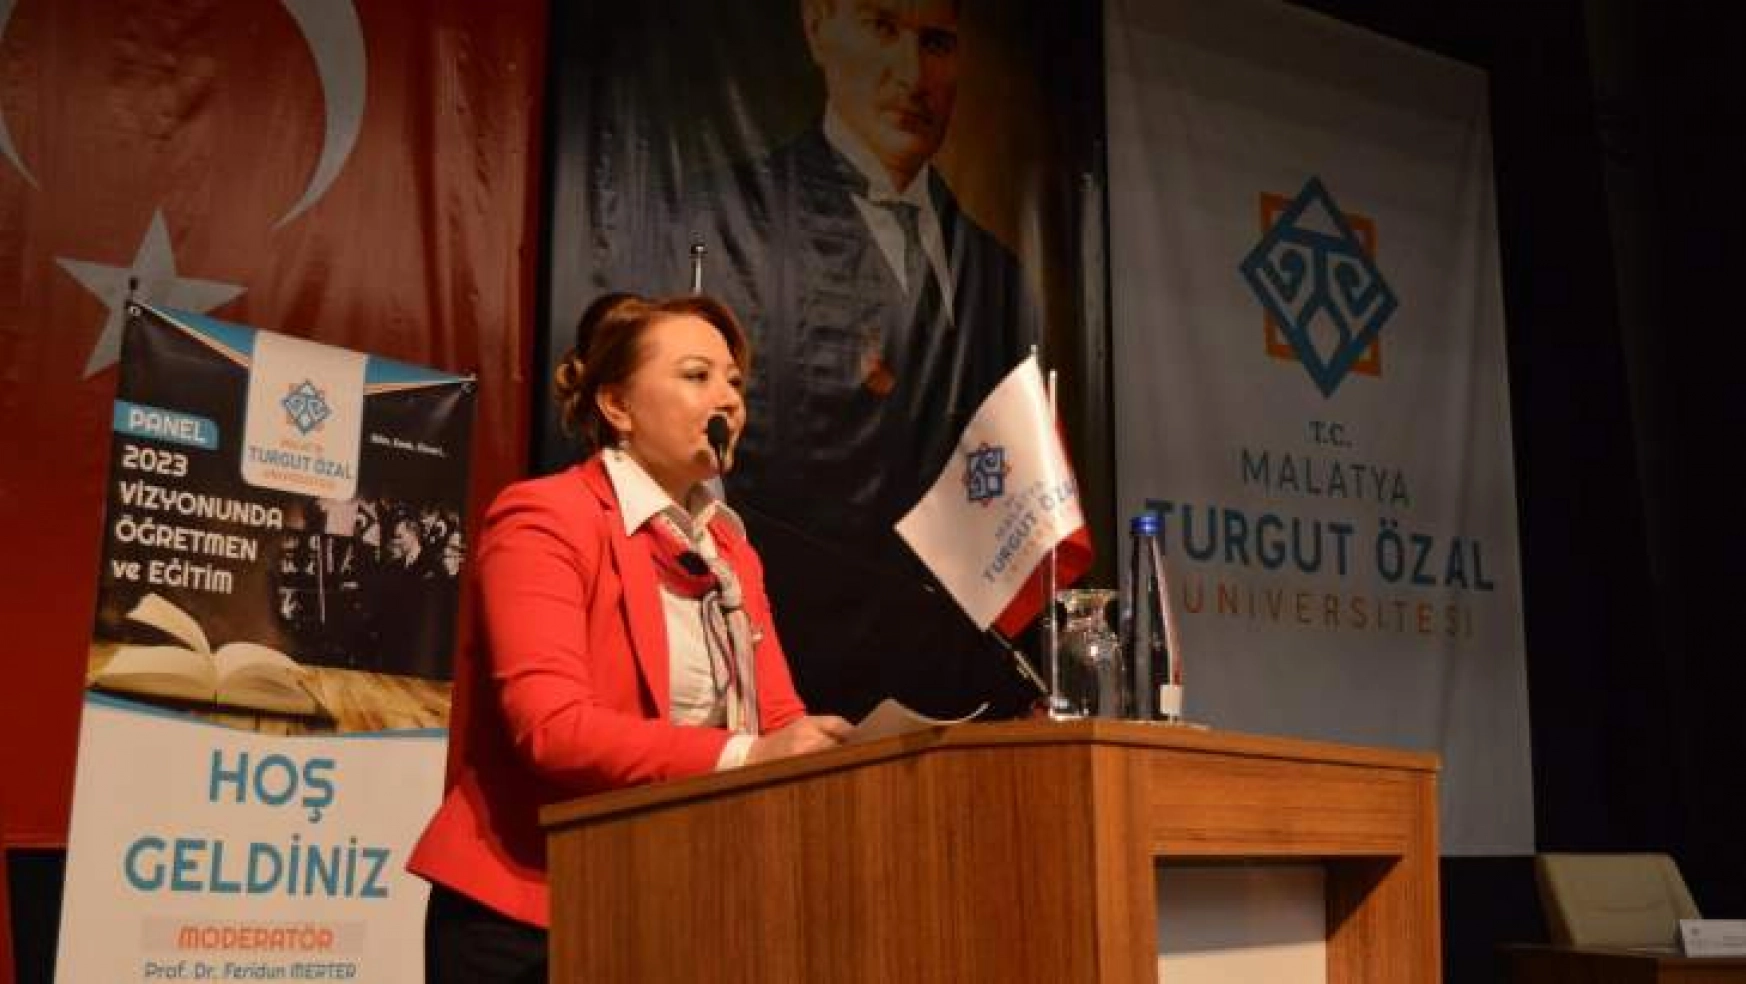 Malatya Turgut Özal Üniversitesi'nde Öğretmenler Günü paneli